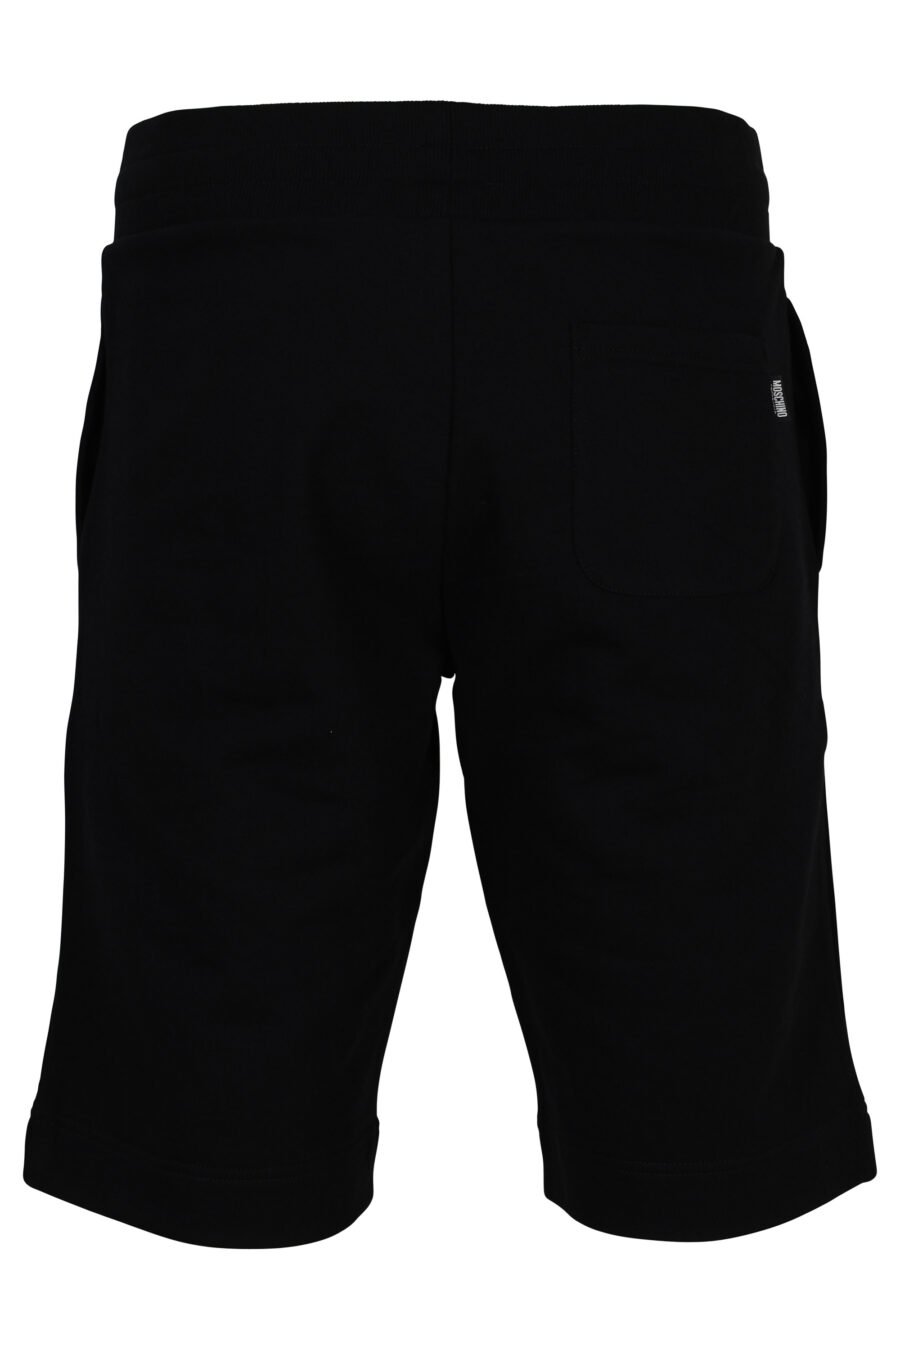 Pantalón de chándal negro con minilogo oso parche - 667113625898 1